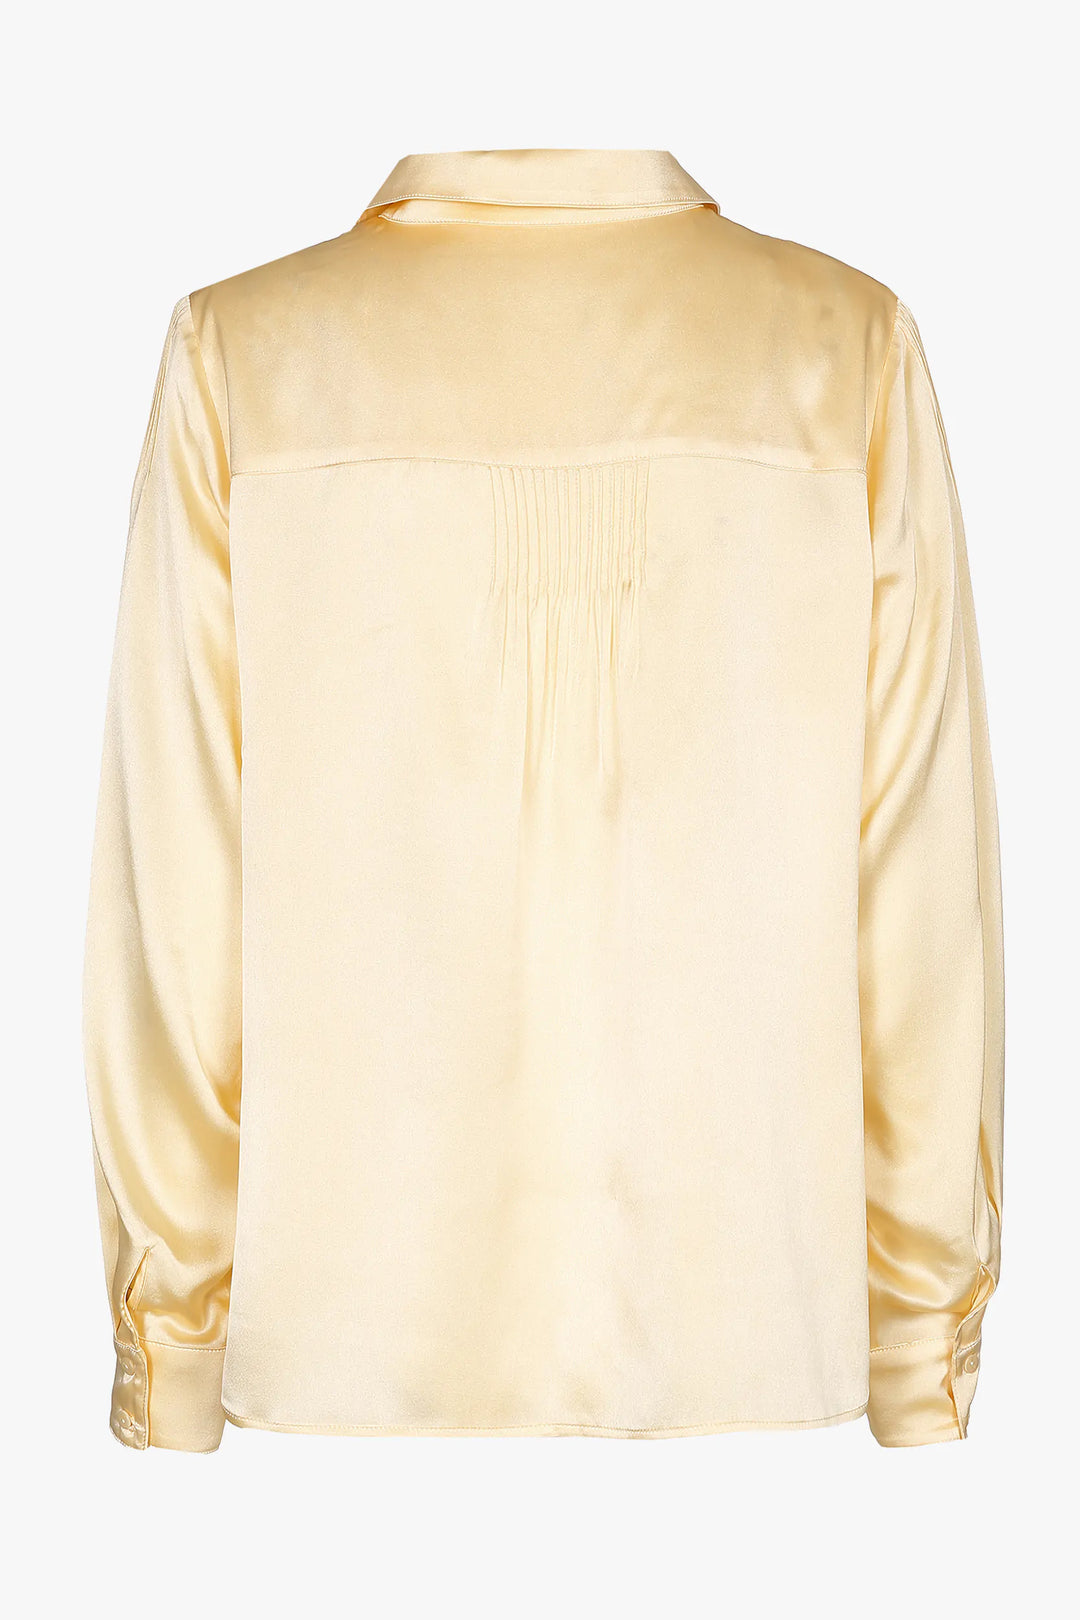 zijde blouse in vanilla - xandres - - grote maten - dameskleding - kledingwinkel - herent - leuven